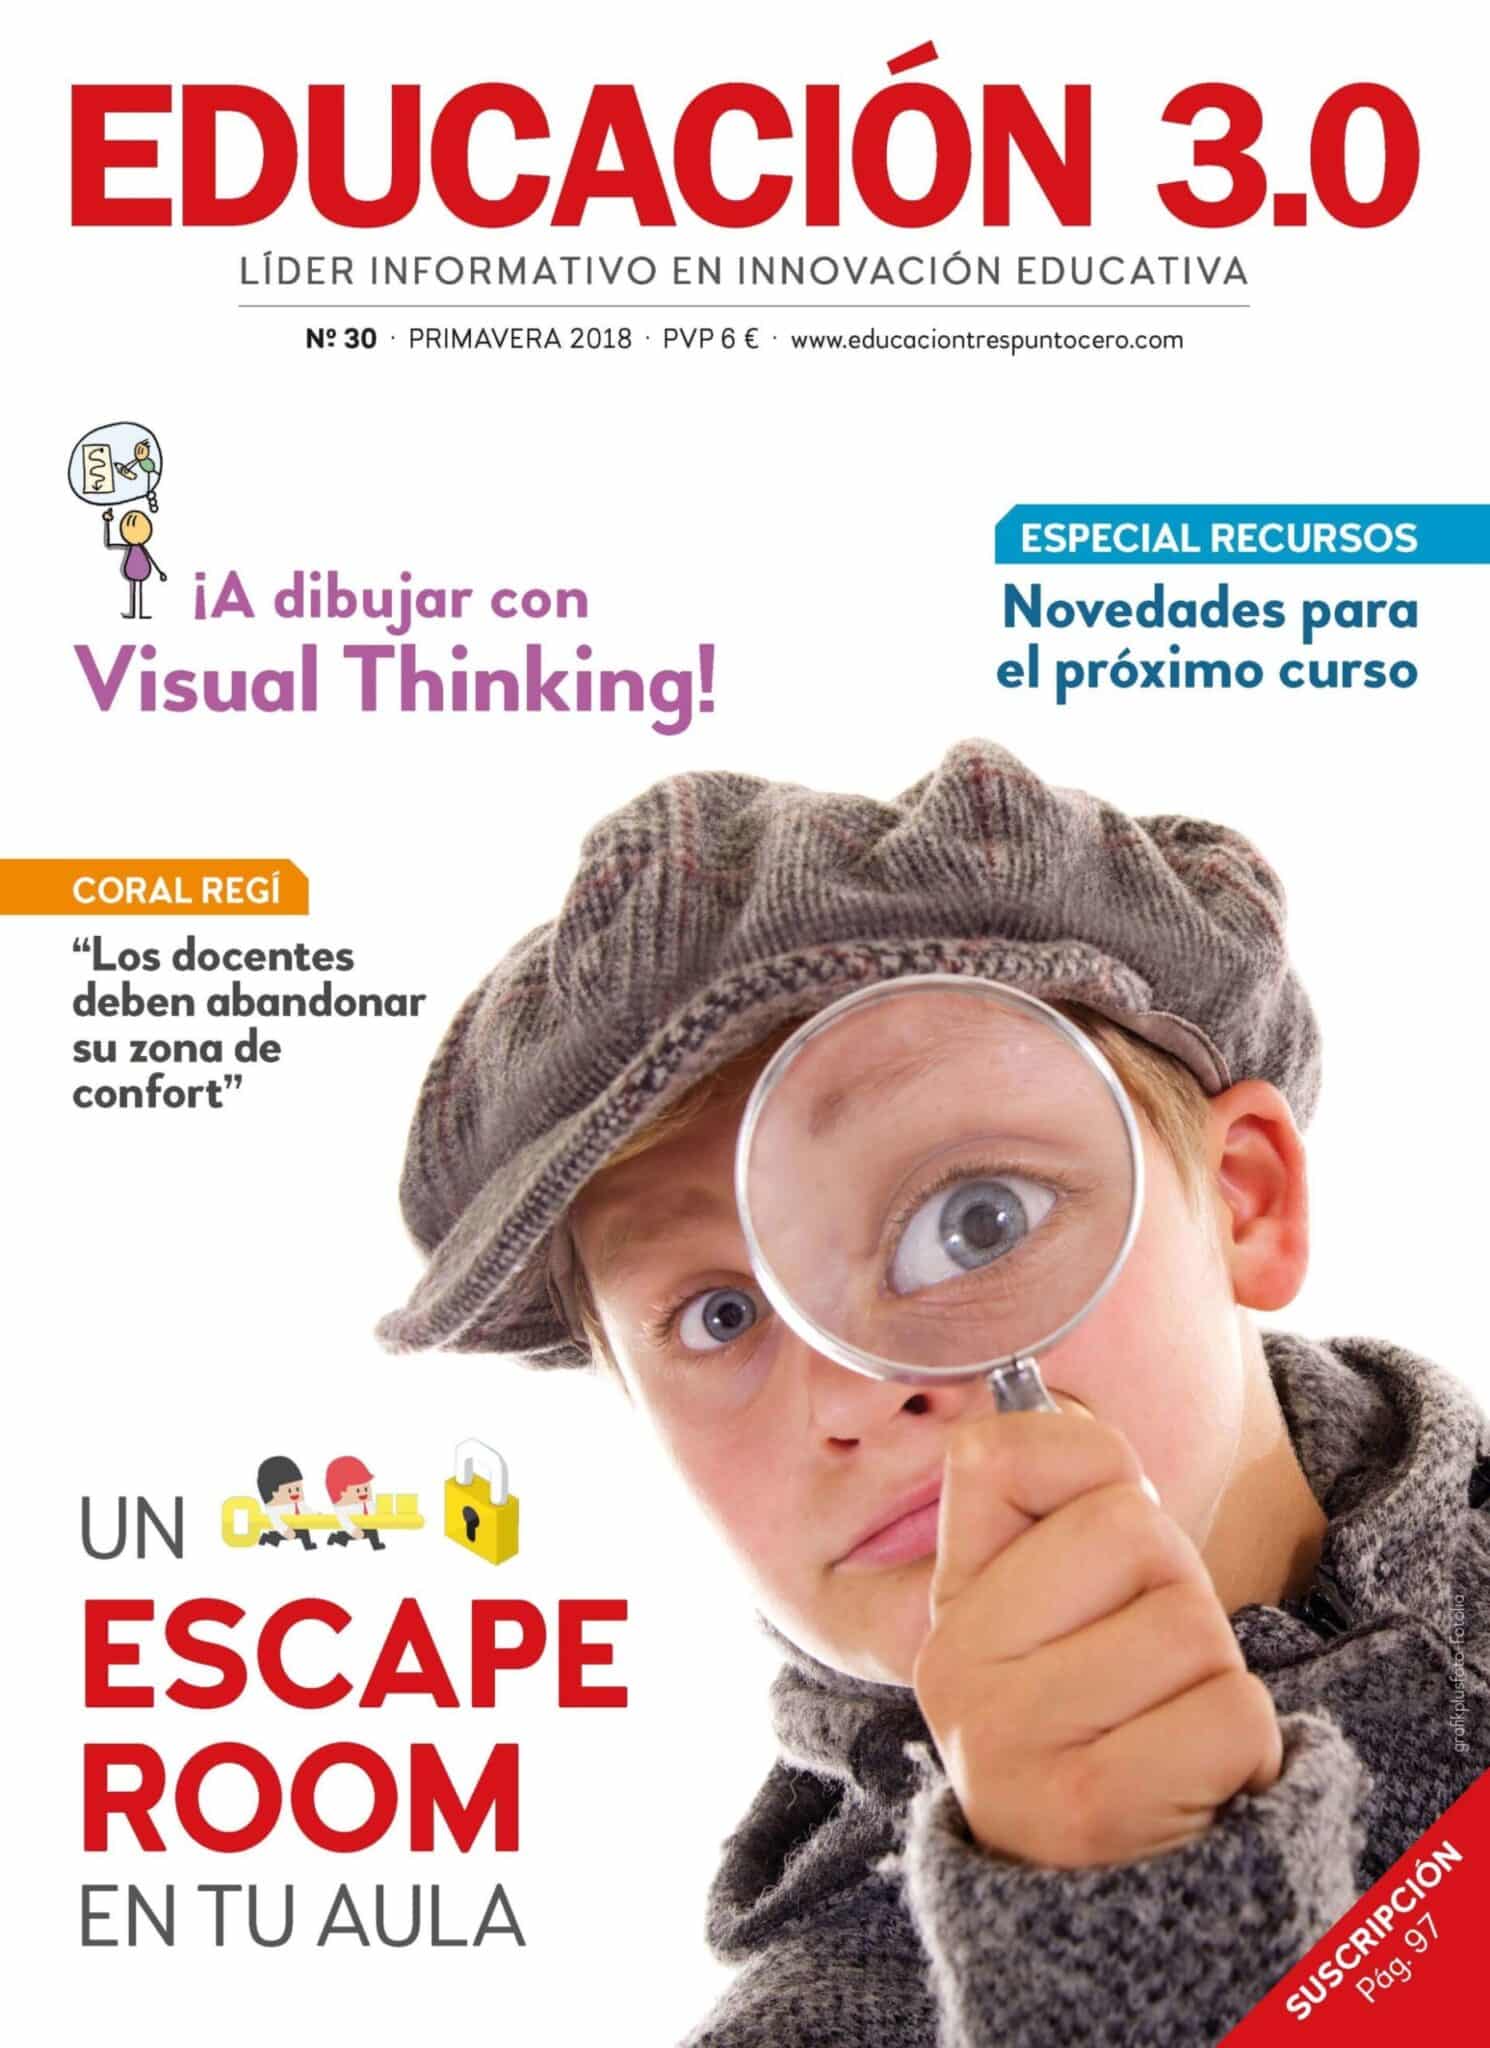 Nº 30 de la Revista EDUCACIÓN 3.0 impresa